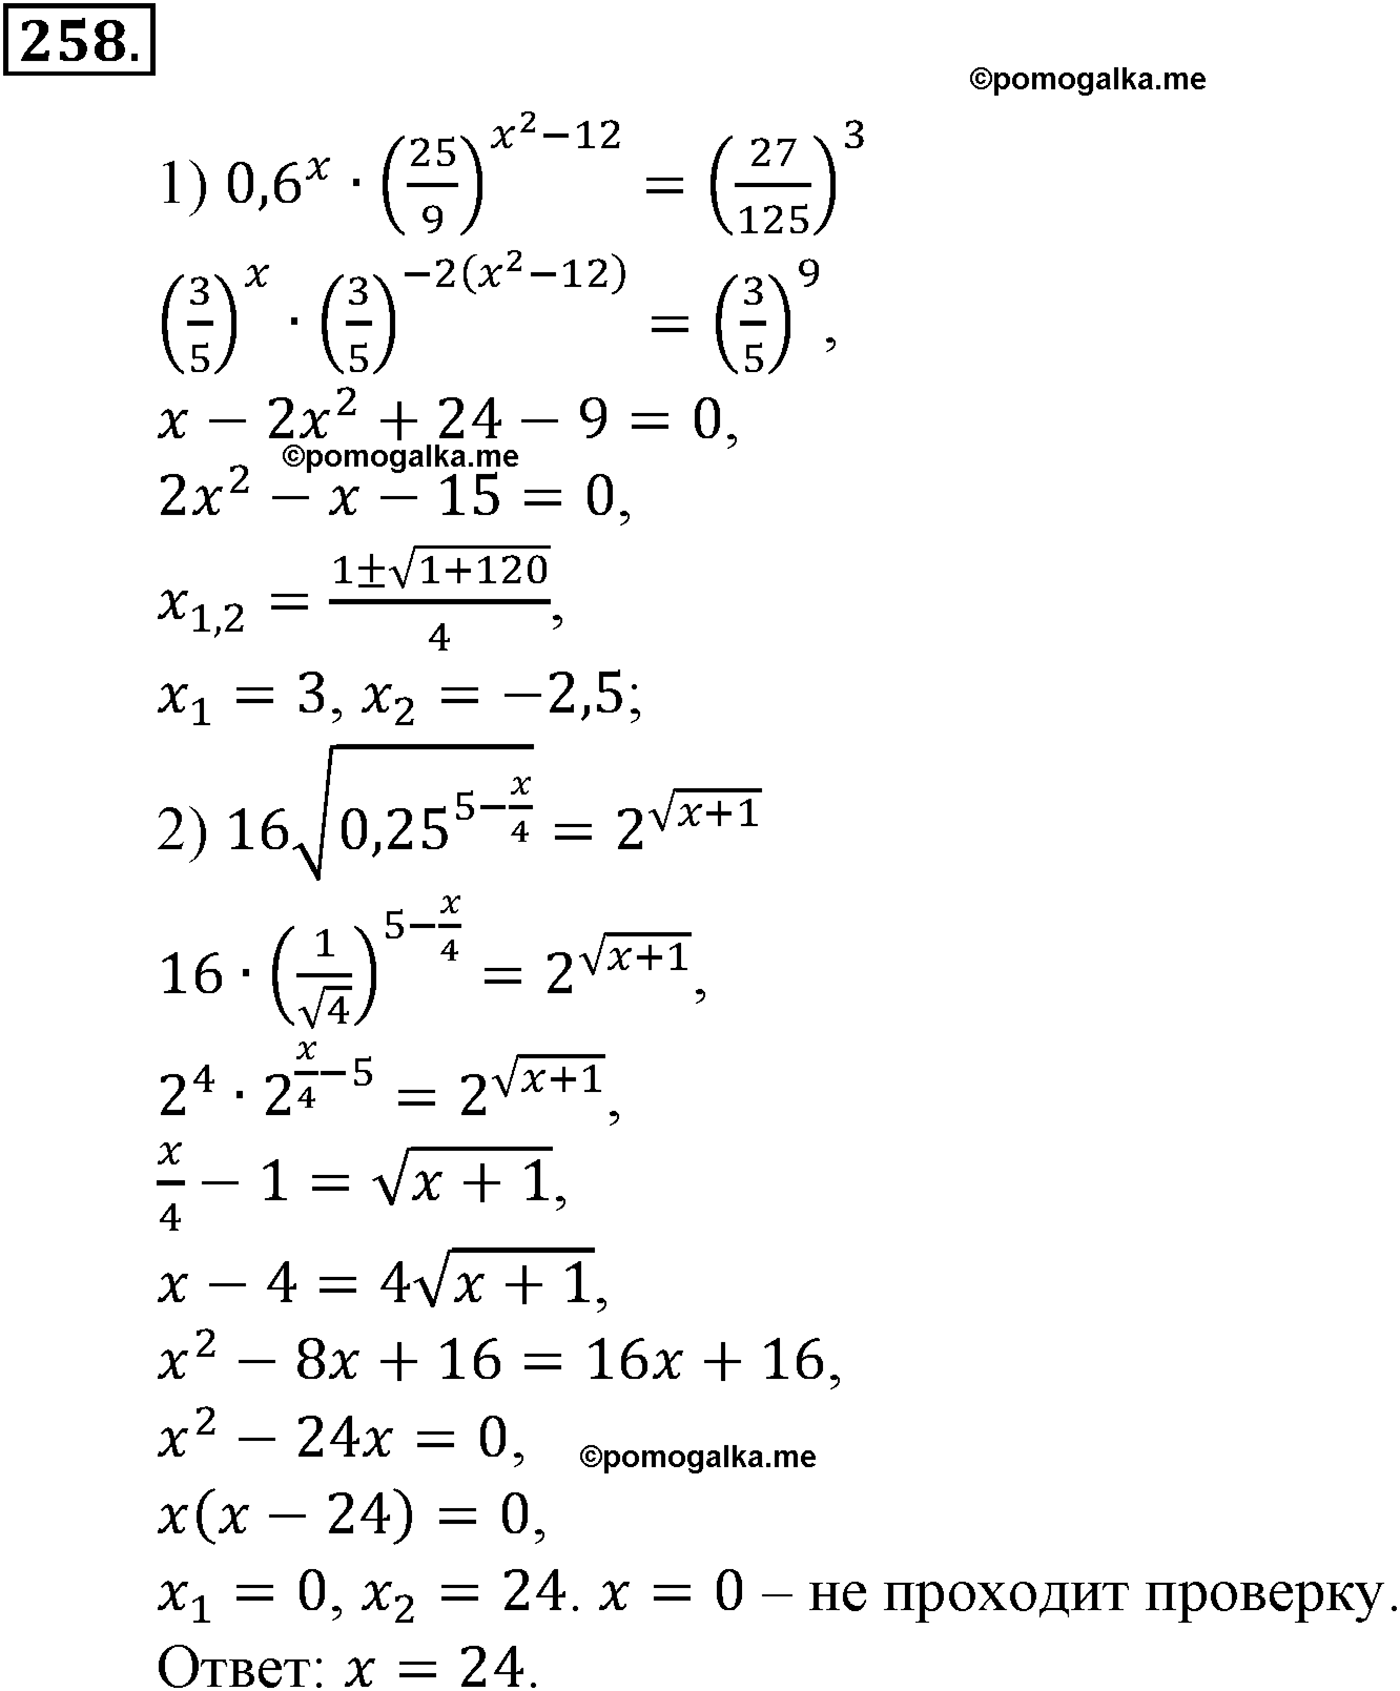 разбор задачи №258 по алгебре за 10-11 класс из учебника Алимова, Колягина